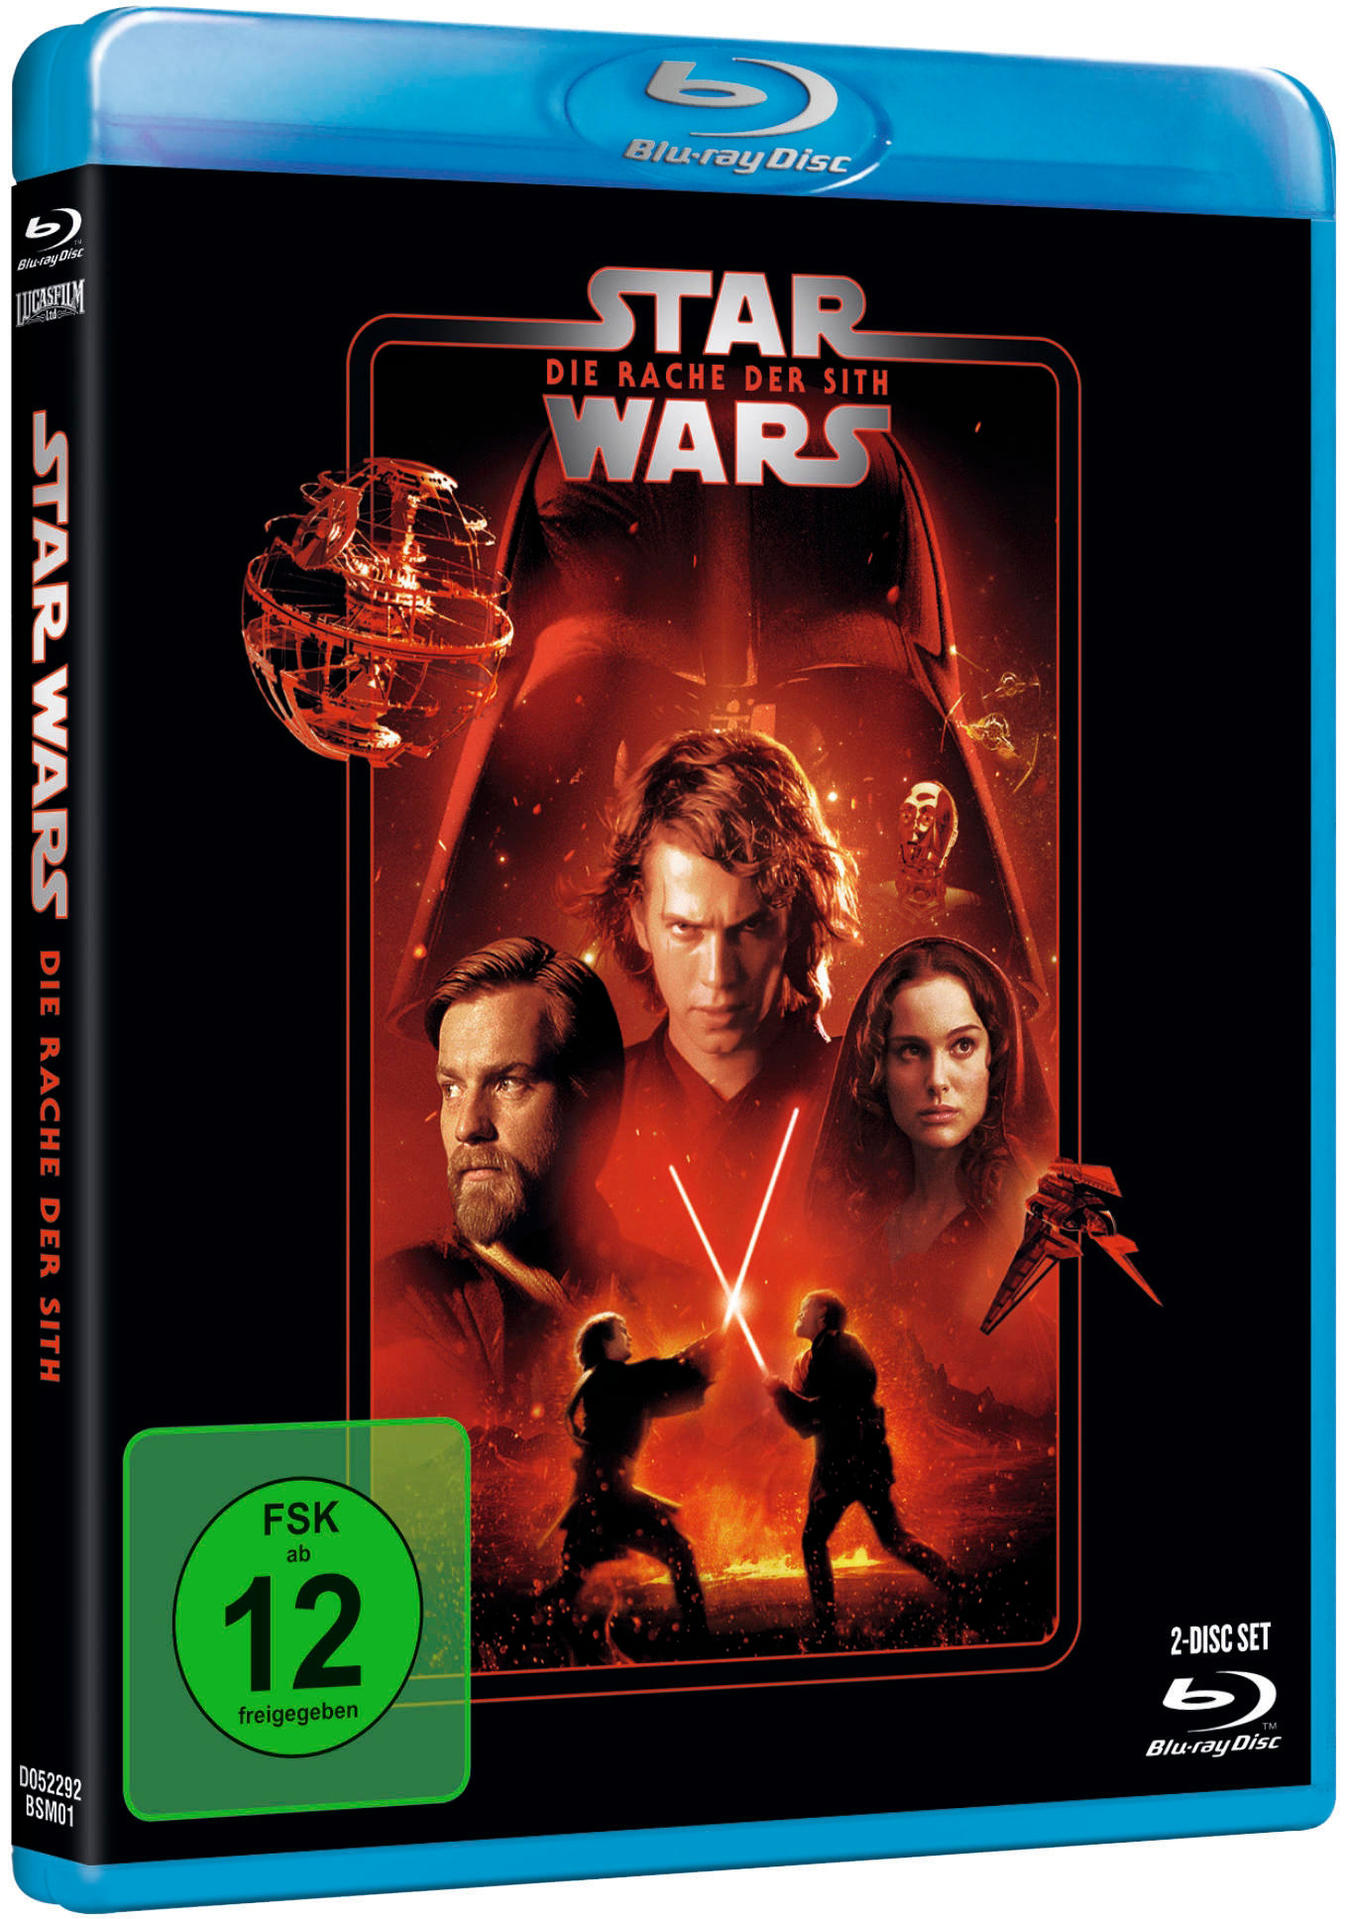 Star Wars: Die Episode der III Blu-ray - Sith Rache